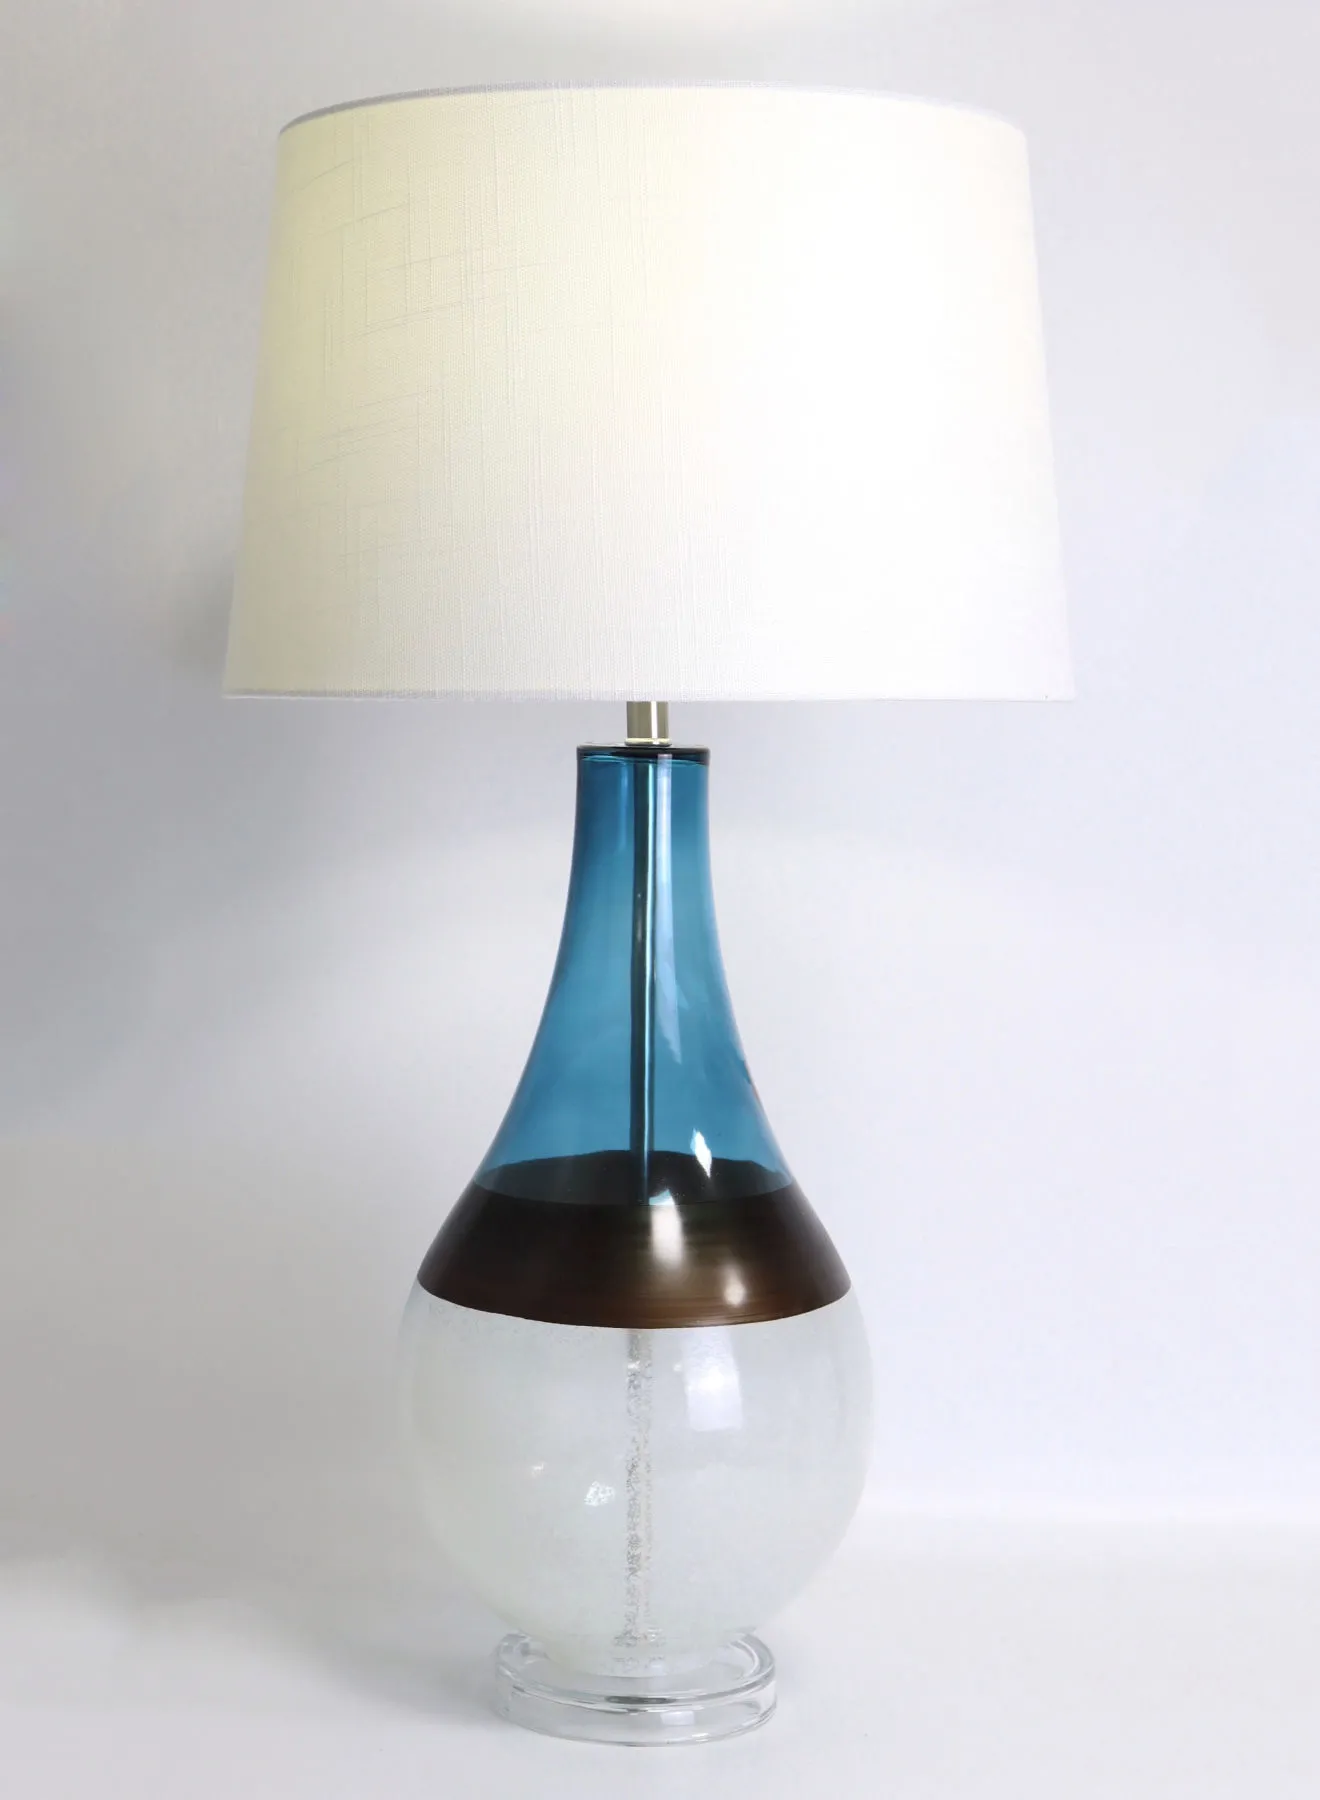 مصباح طاولة زجاجي بتصميم عصري من ebb & flow مادة فاخرة فريدة من نوعها ذات جودة عالية للمنزل الأنيق المثالي RSN71023 أزرق / أبيض 15 × 28